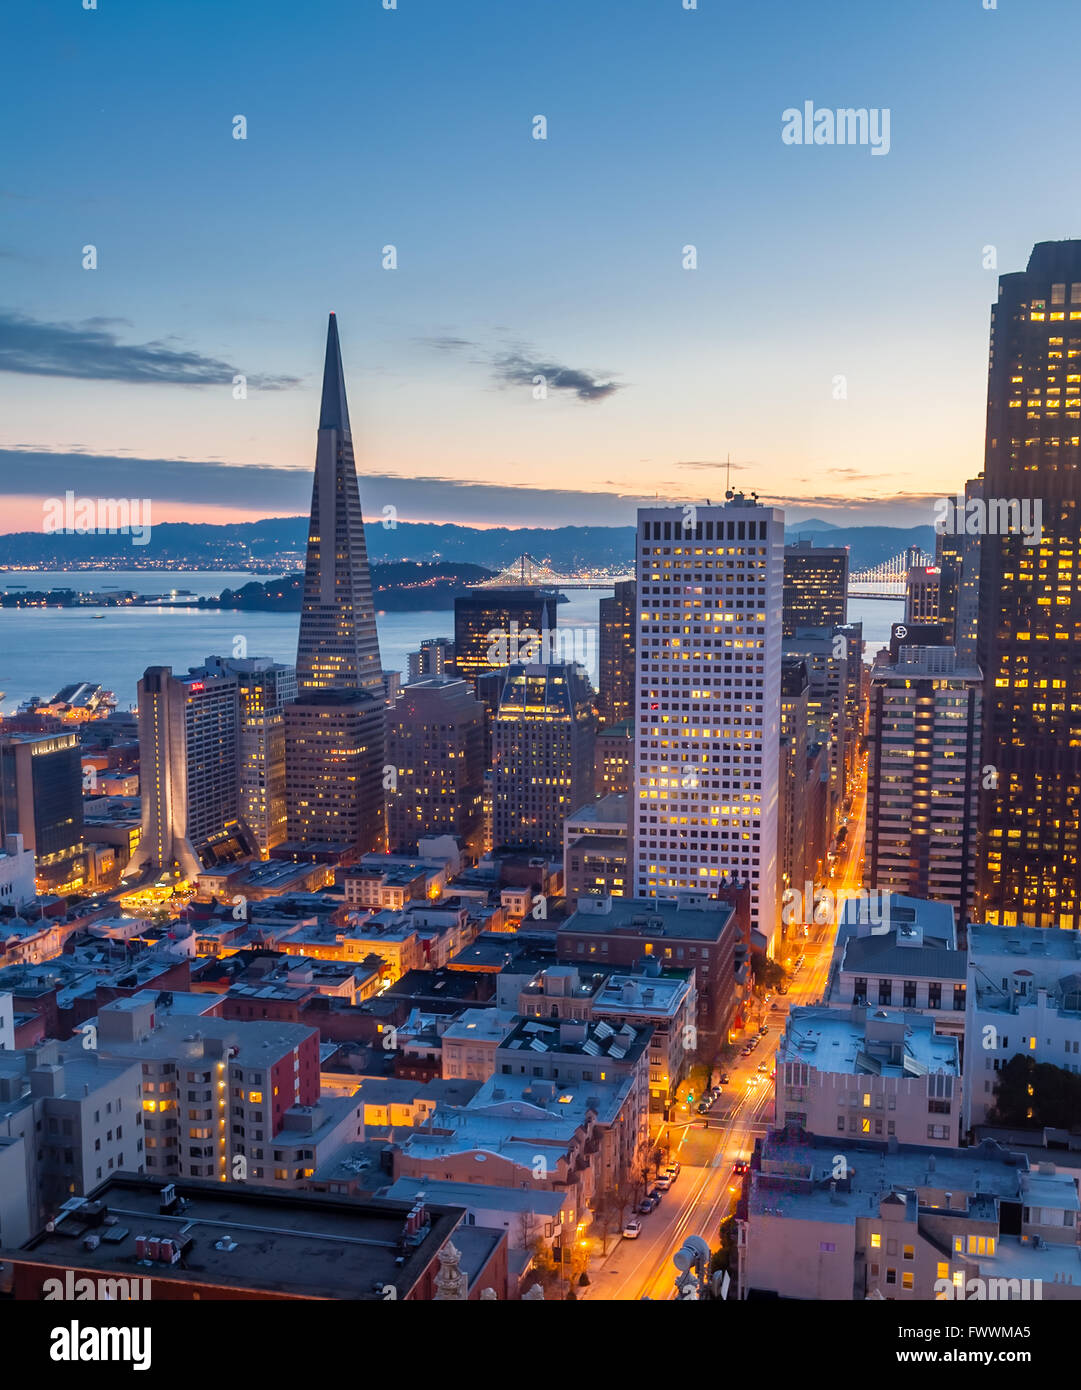 Il centro cittadino di San Francisco dalla parte superiore del marchio all'alba, CALIFORNIA, STATI UNITI D'AMERICA Foto Stock